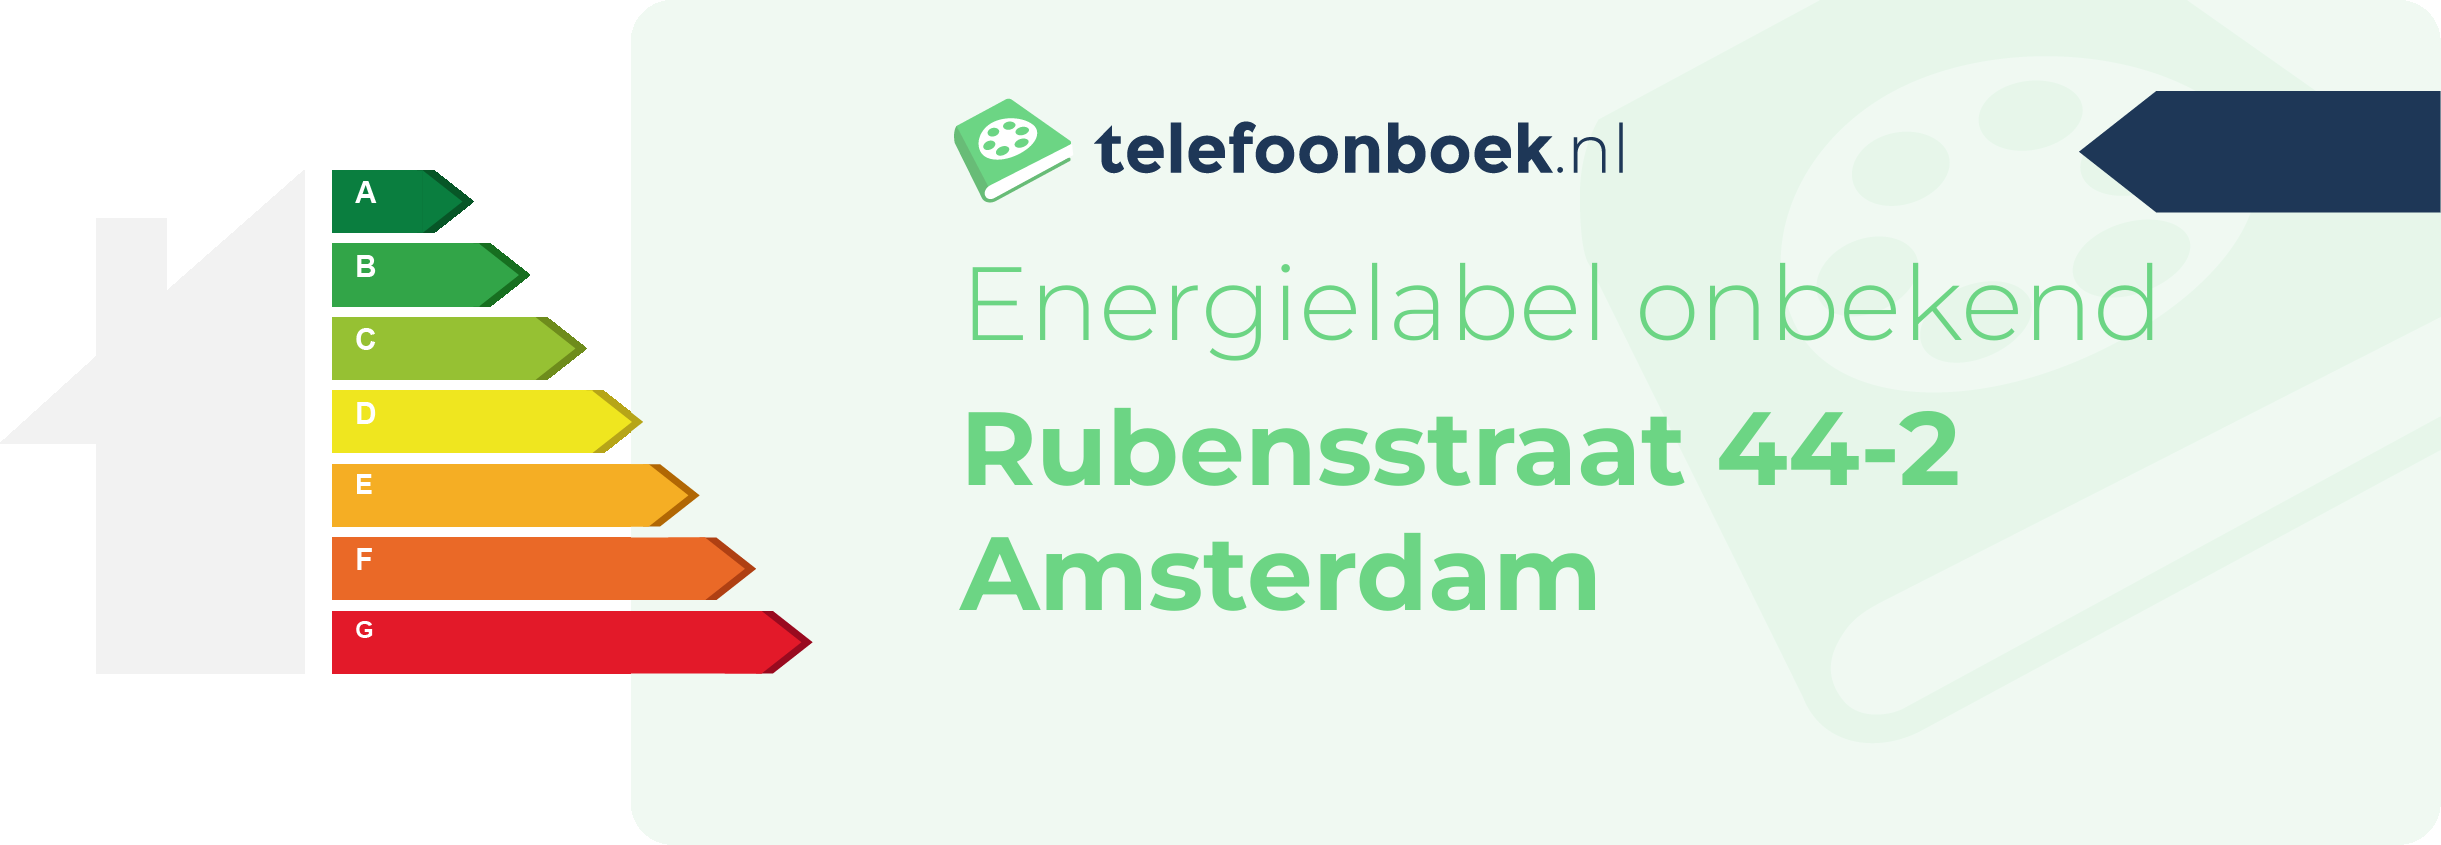 Energielabel Rubensstraat 44-2 Amsterdam